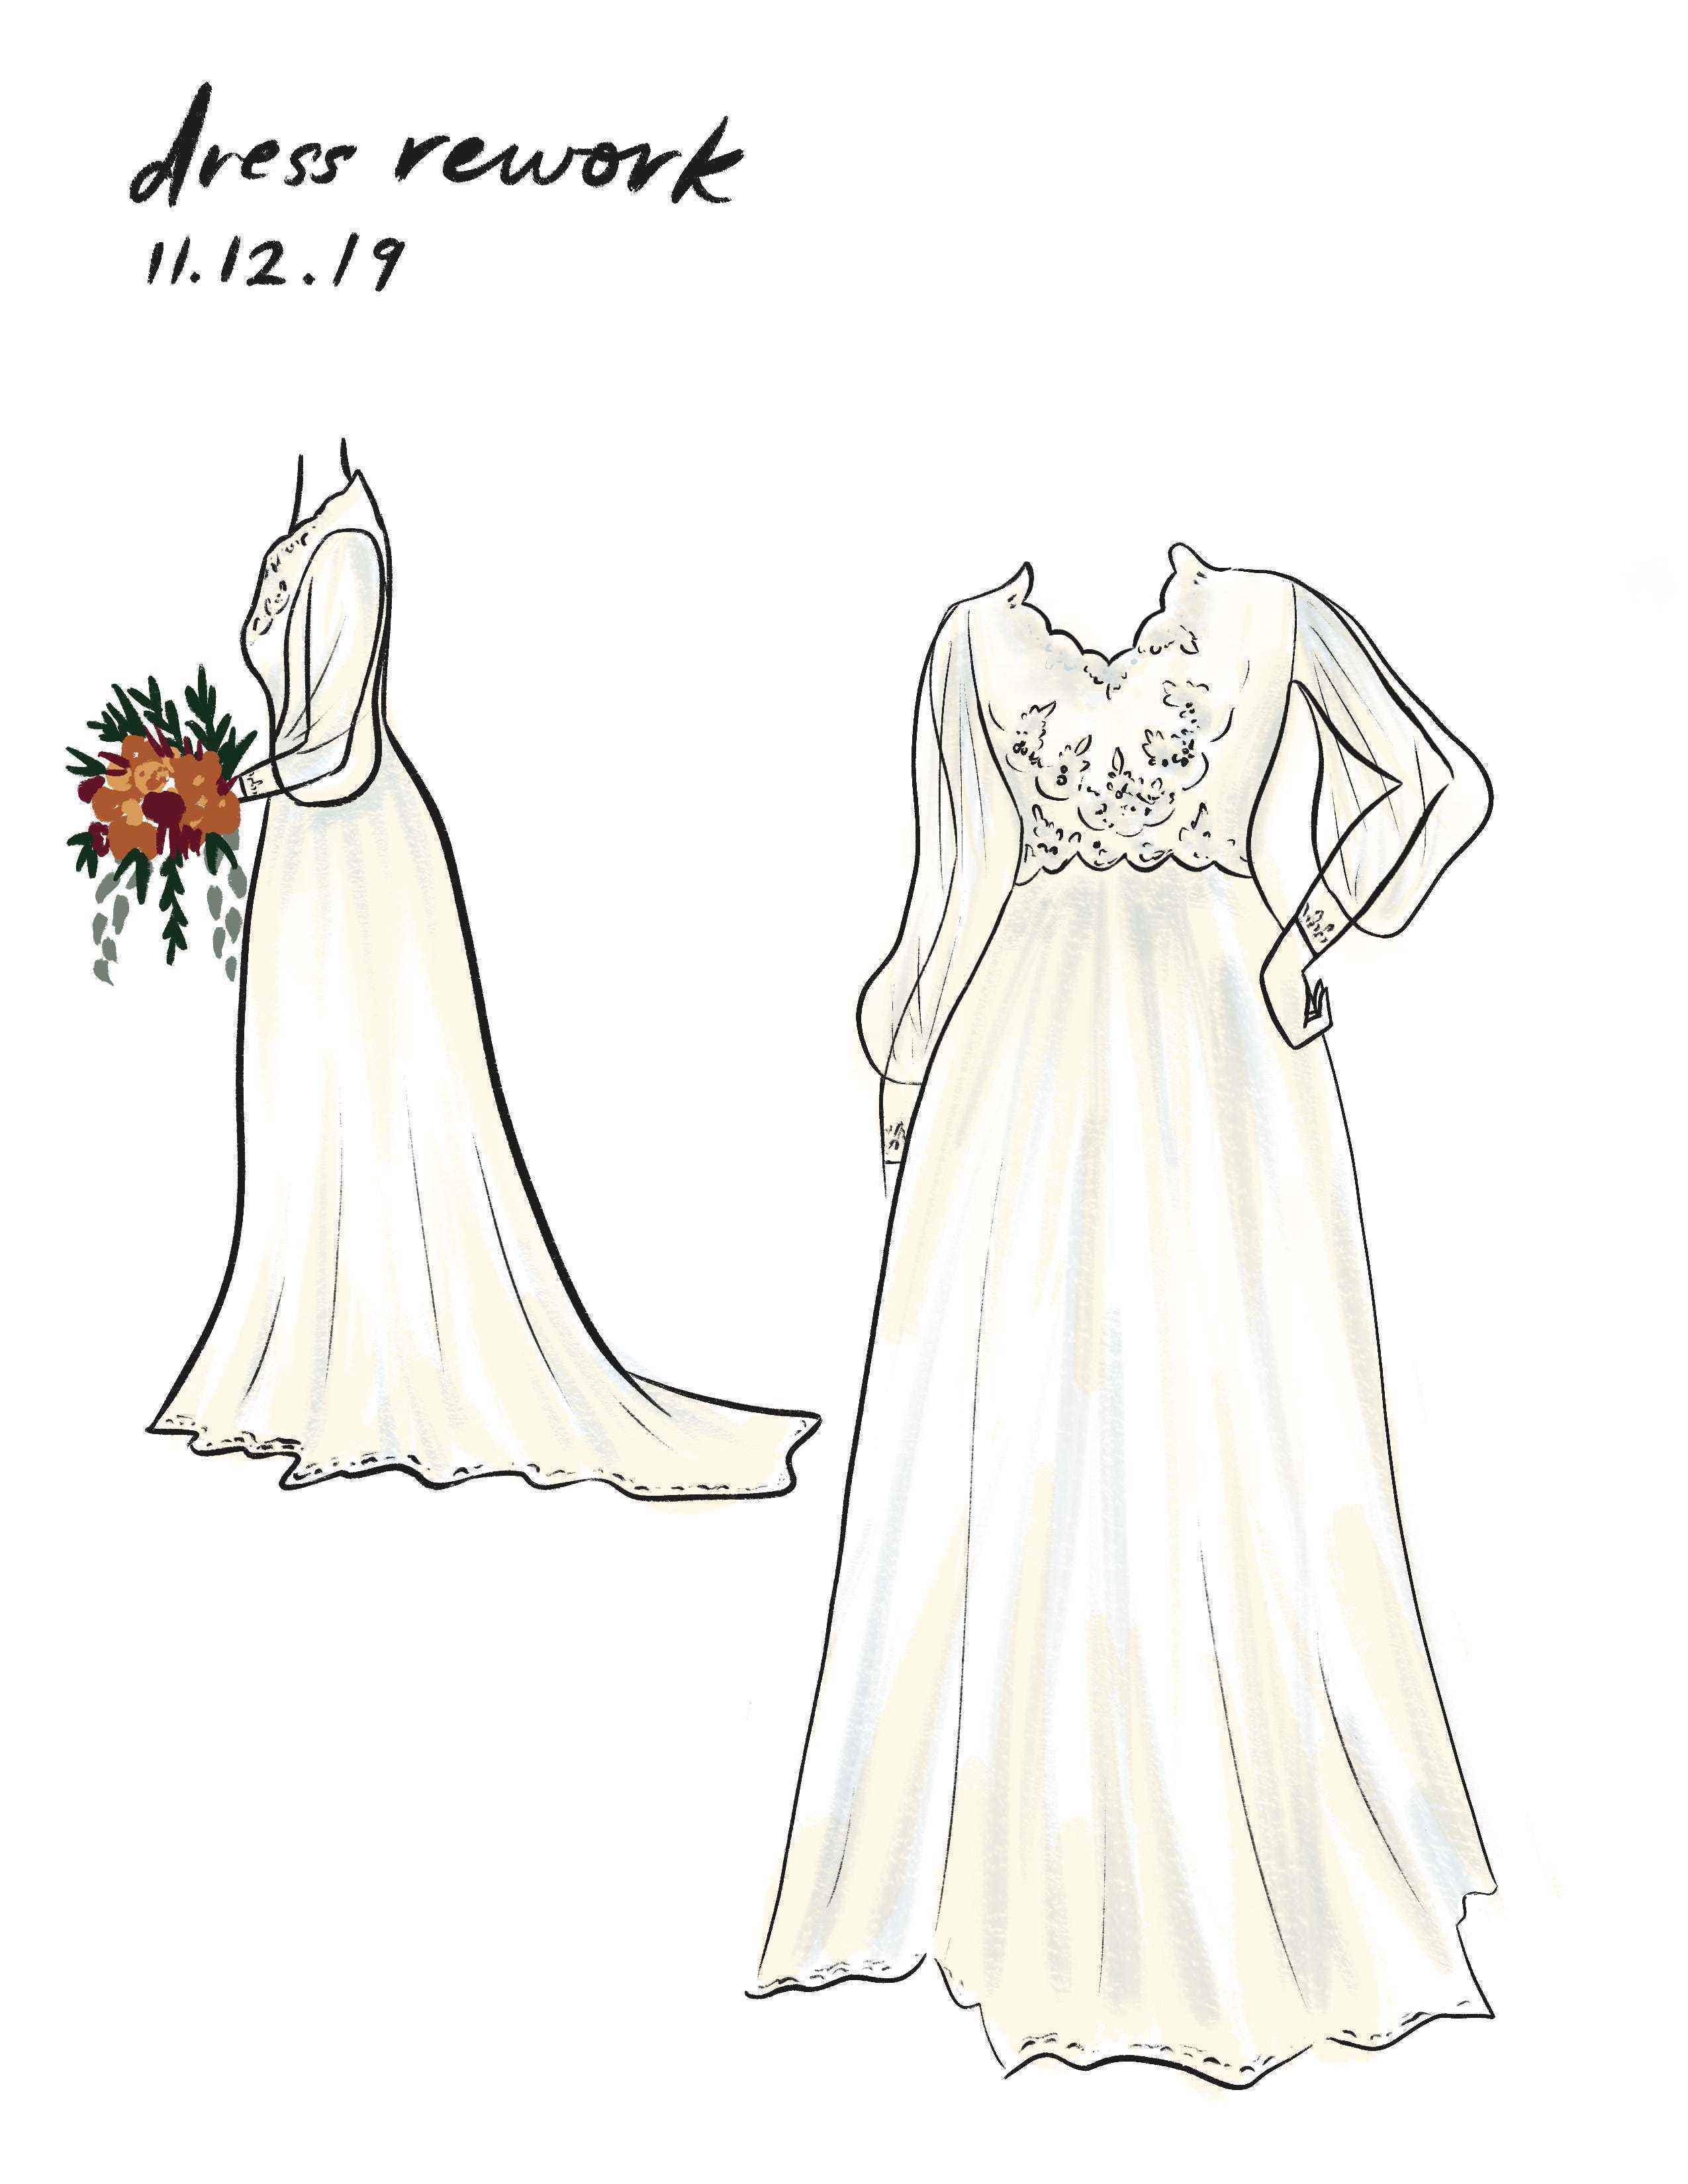 Vandergriffs Hochzeitslook war eine exakte Version einer Skizze, die sie 2019 gemacht hatte.